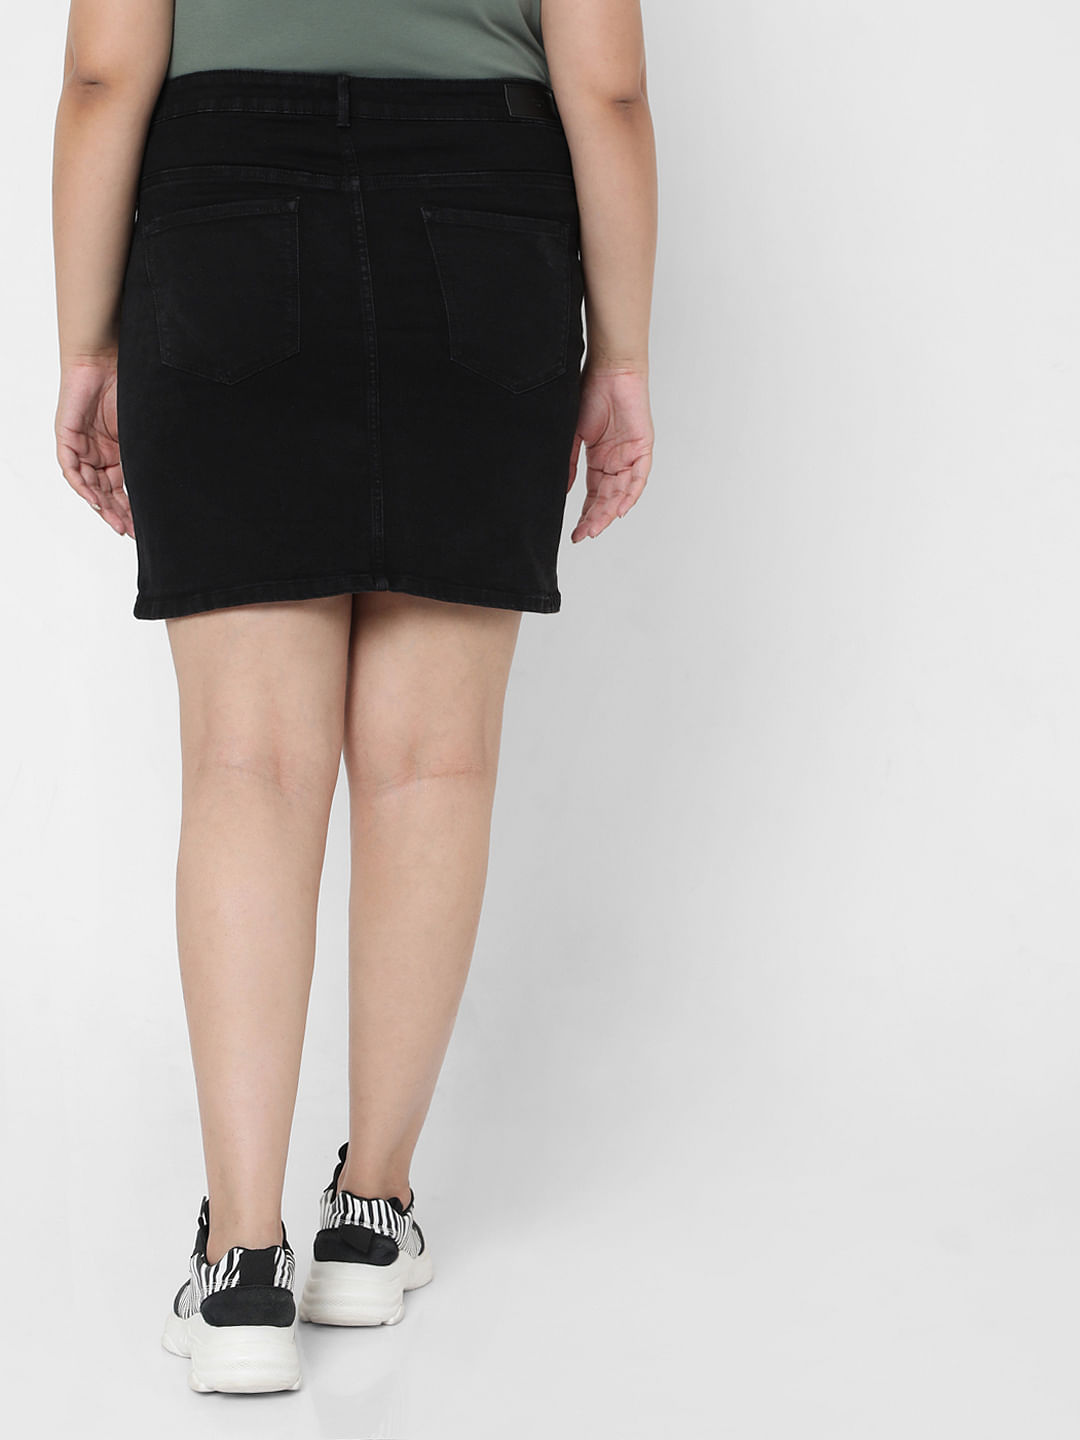 Shape Your Body Denim Skirt | Target Australia